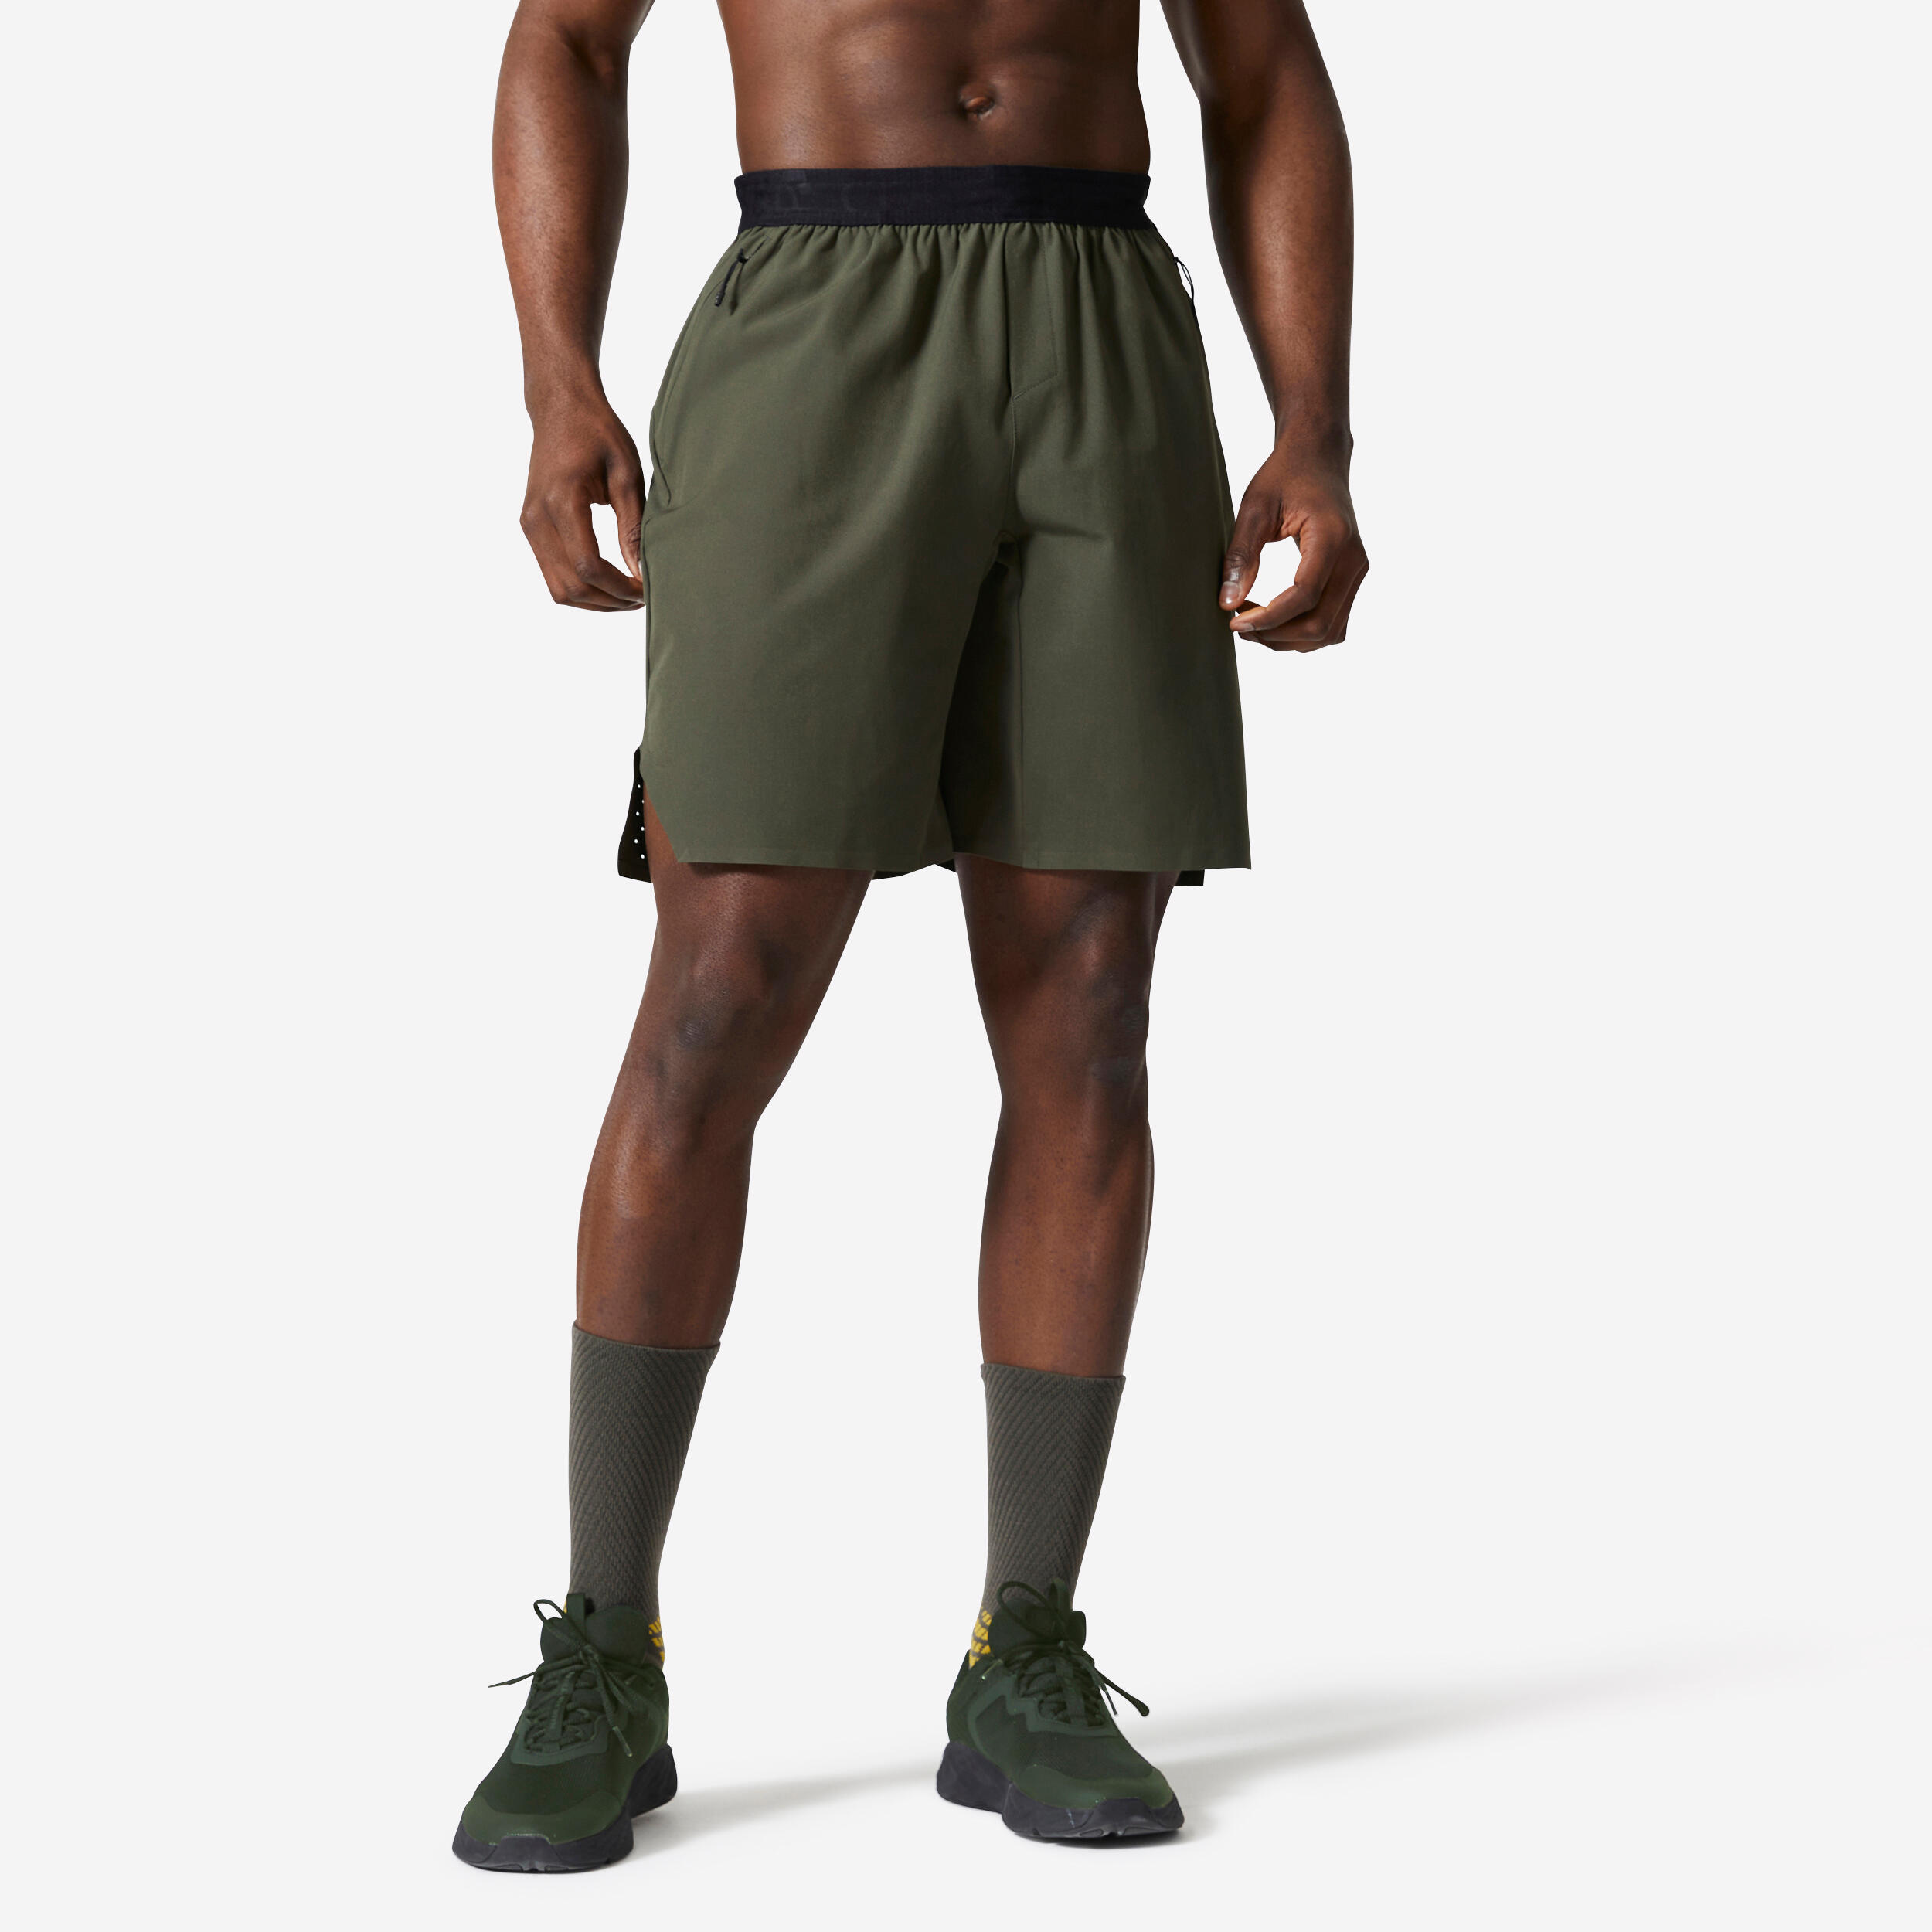 DOMYOS Men's Breathable Performance Cross Training Shorts with Zipped Pockets - Khaki